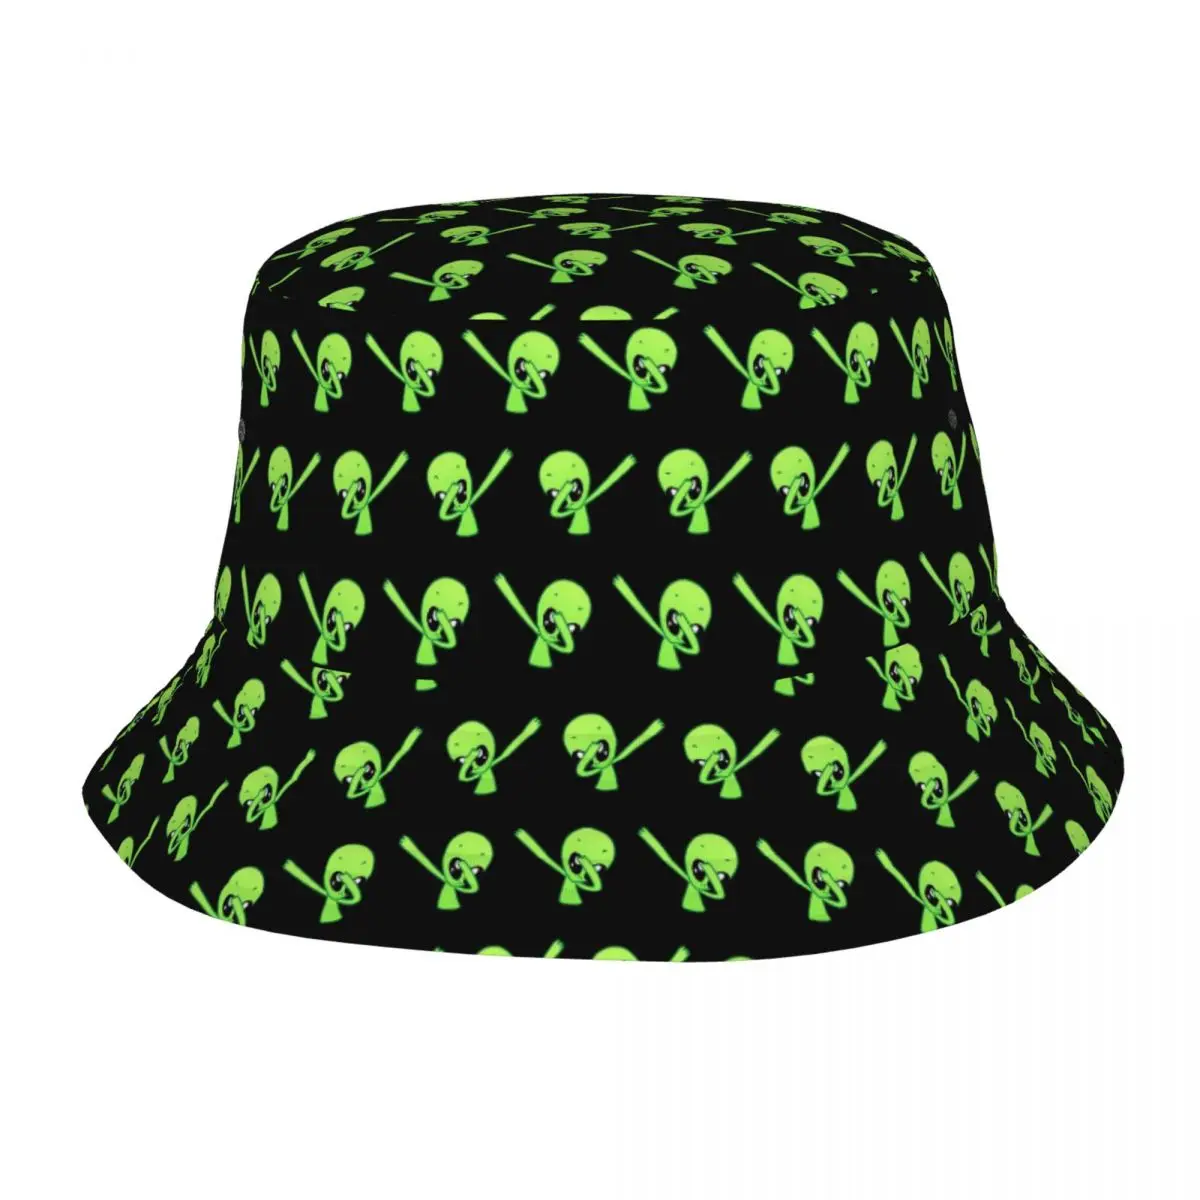 

Dabbing Alien UFO Bucket Hat Vocation Getaway Headwear Accessories Fisherman Caps for Outdoor Women Men Bob Hat Lightweight